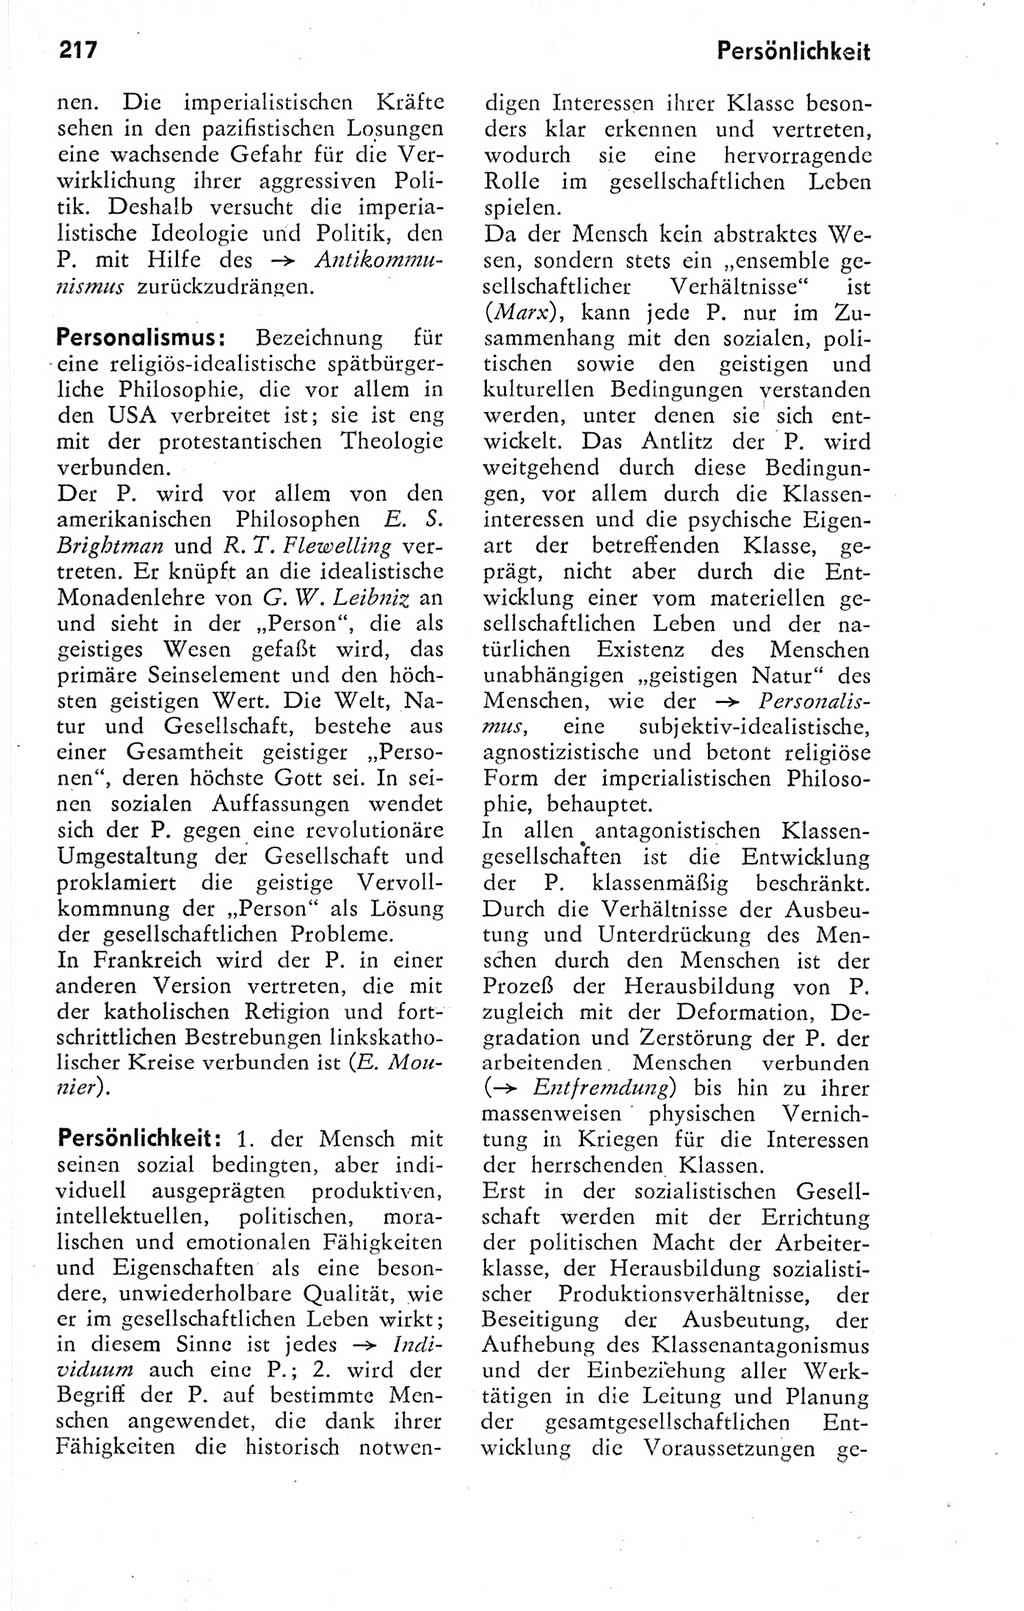 Kleines Wörterbuch der marxistisch-leninistischen Philosophie [Deutsche Demokratische Republik (DDR)] 1974, Seite 217 (Kl. Wb. ML Phil. DDR 1974, S. 217)